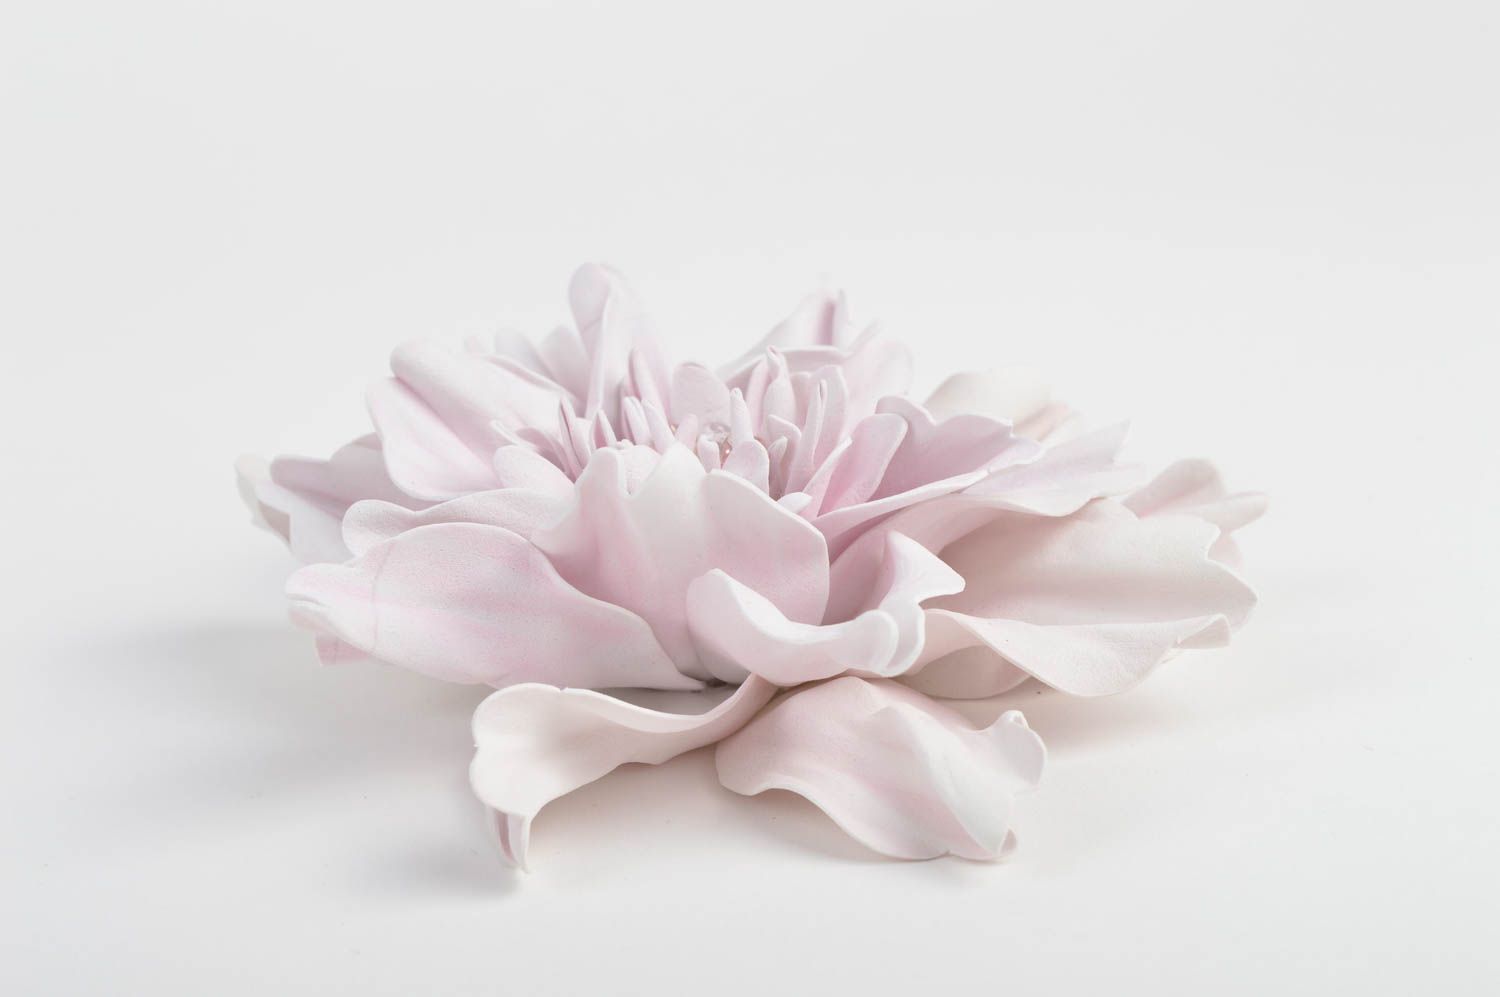 Красивая заготовка под брошь в виде цветка из фоамирана бледно розовая хенд мейд фото 2